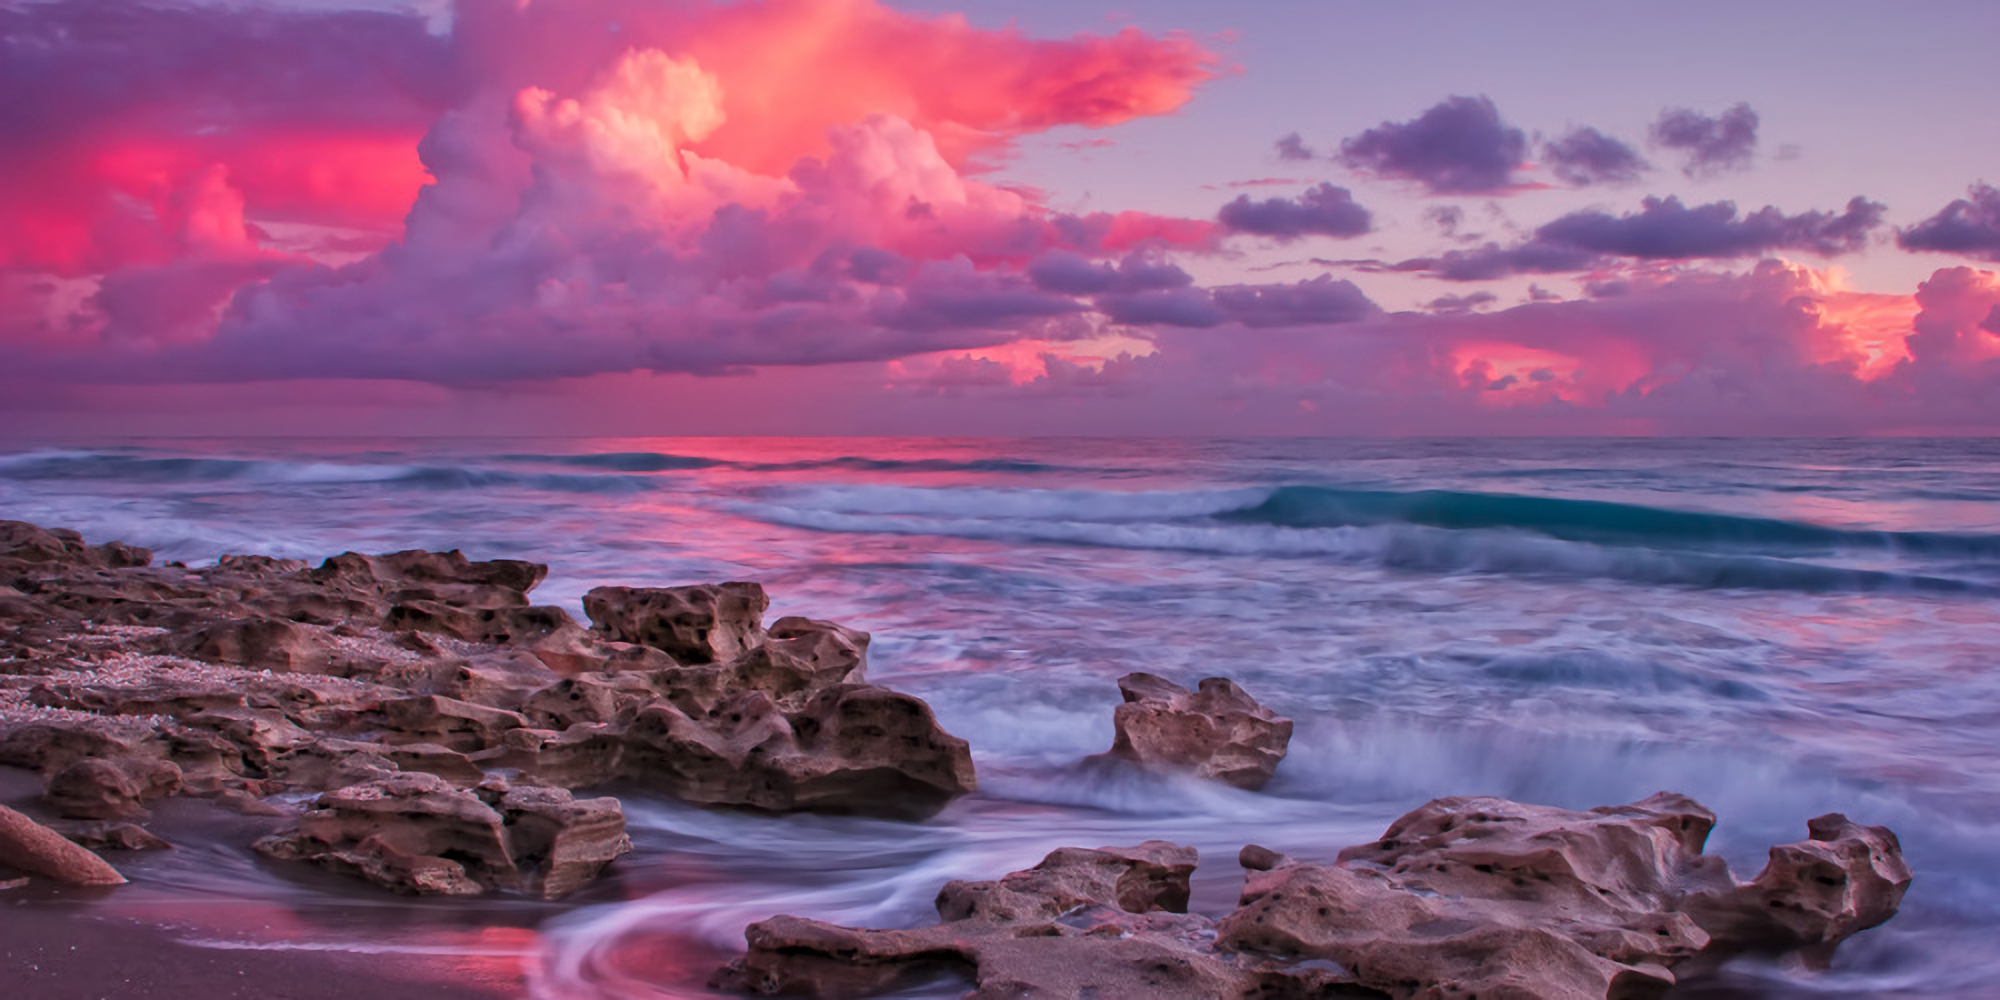 Pink Ocean Desktop Wallpapers